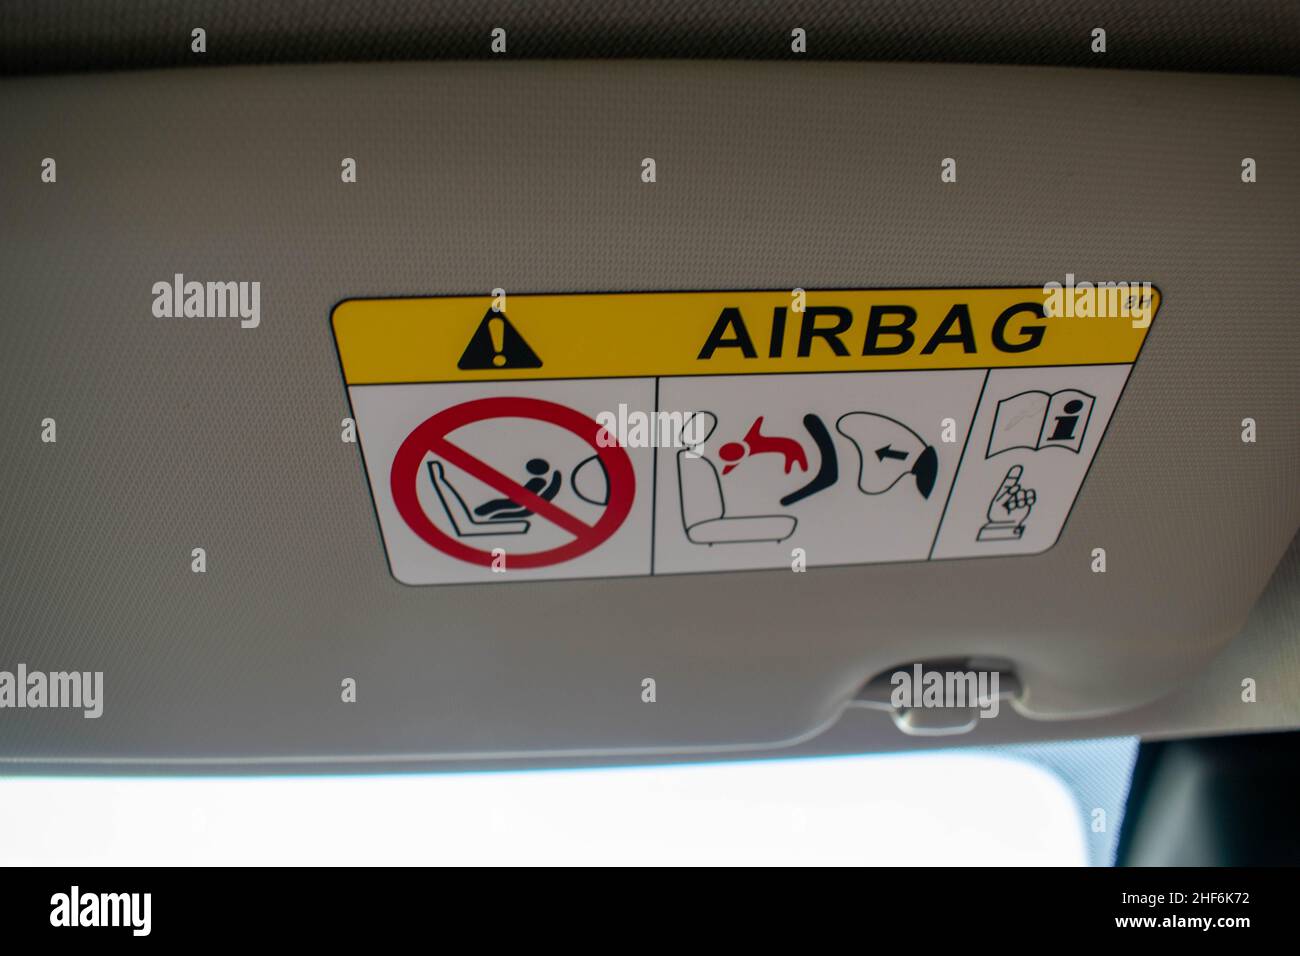 Informationen, die die Airbag-Funktion innerhalb eines Automobils anzeigen. Airbags retten Leben, wenn ein Autofahrer bei einer Kollision oder einem Verkehrsunfall ist. Sicherheit Stockfoto